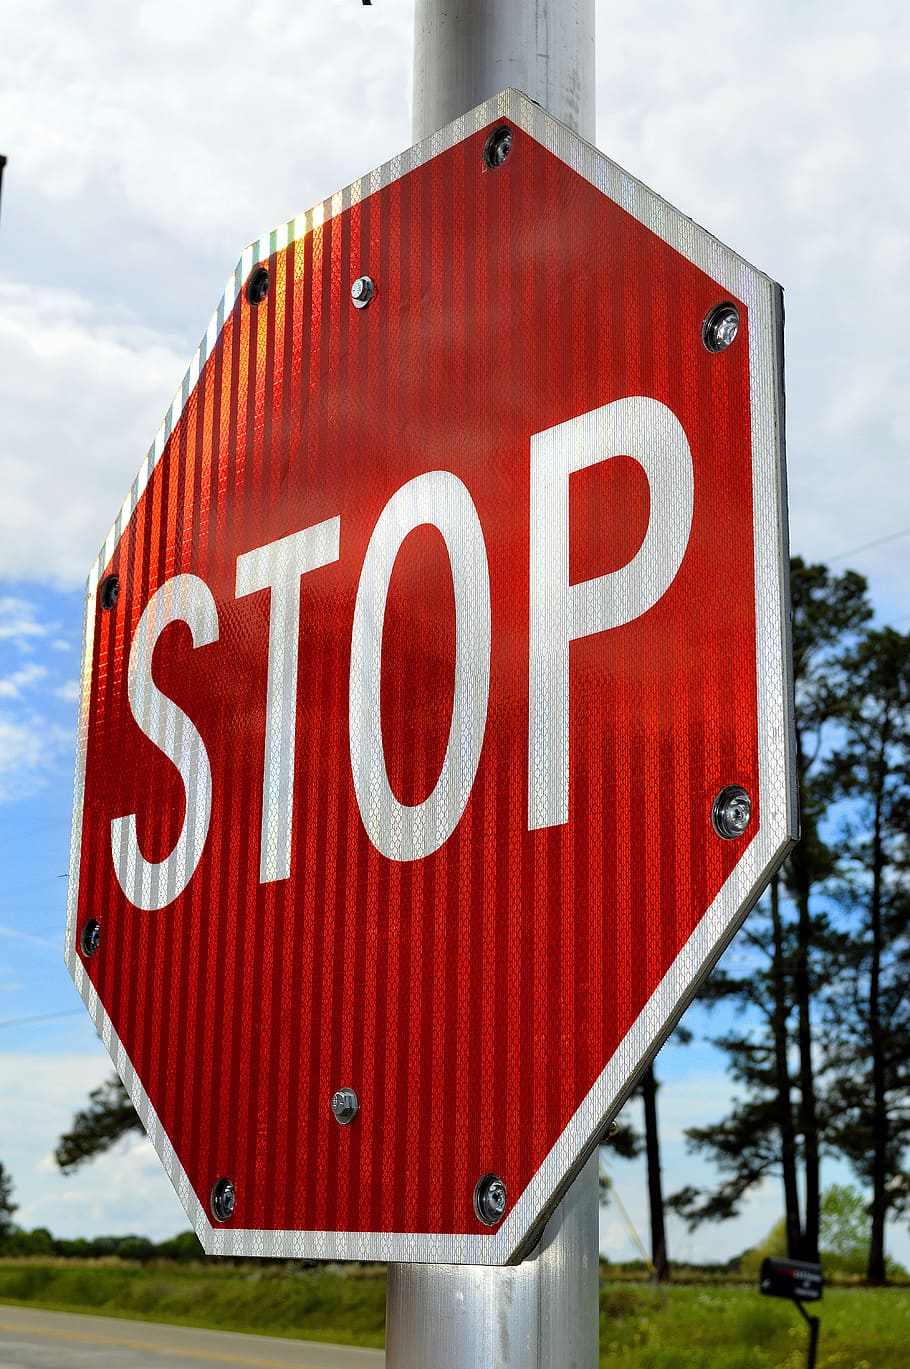 berhenti, tanda, waspada, merah, simbol, peringatan, jalan, lalu lintas, bahaya, tanda berhenti